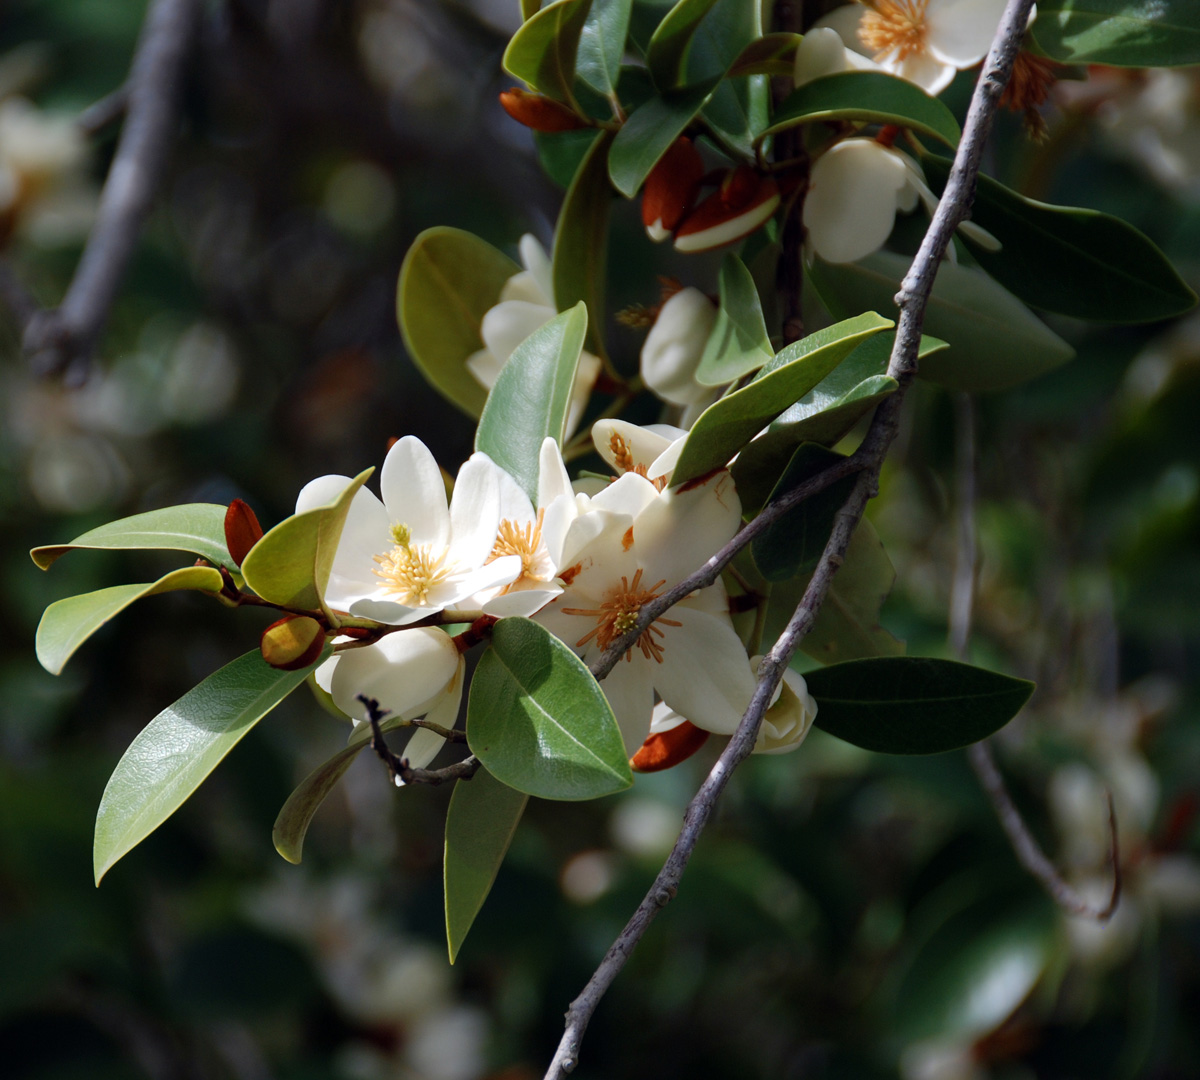 Yunnan magnolia